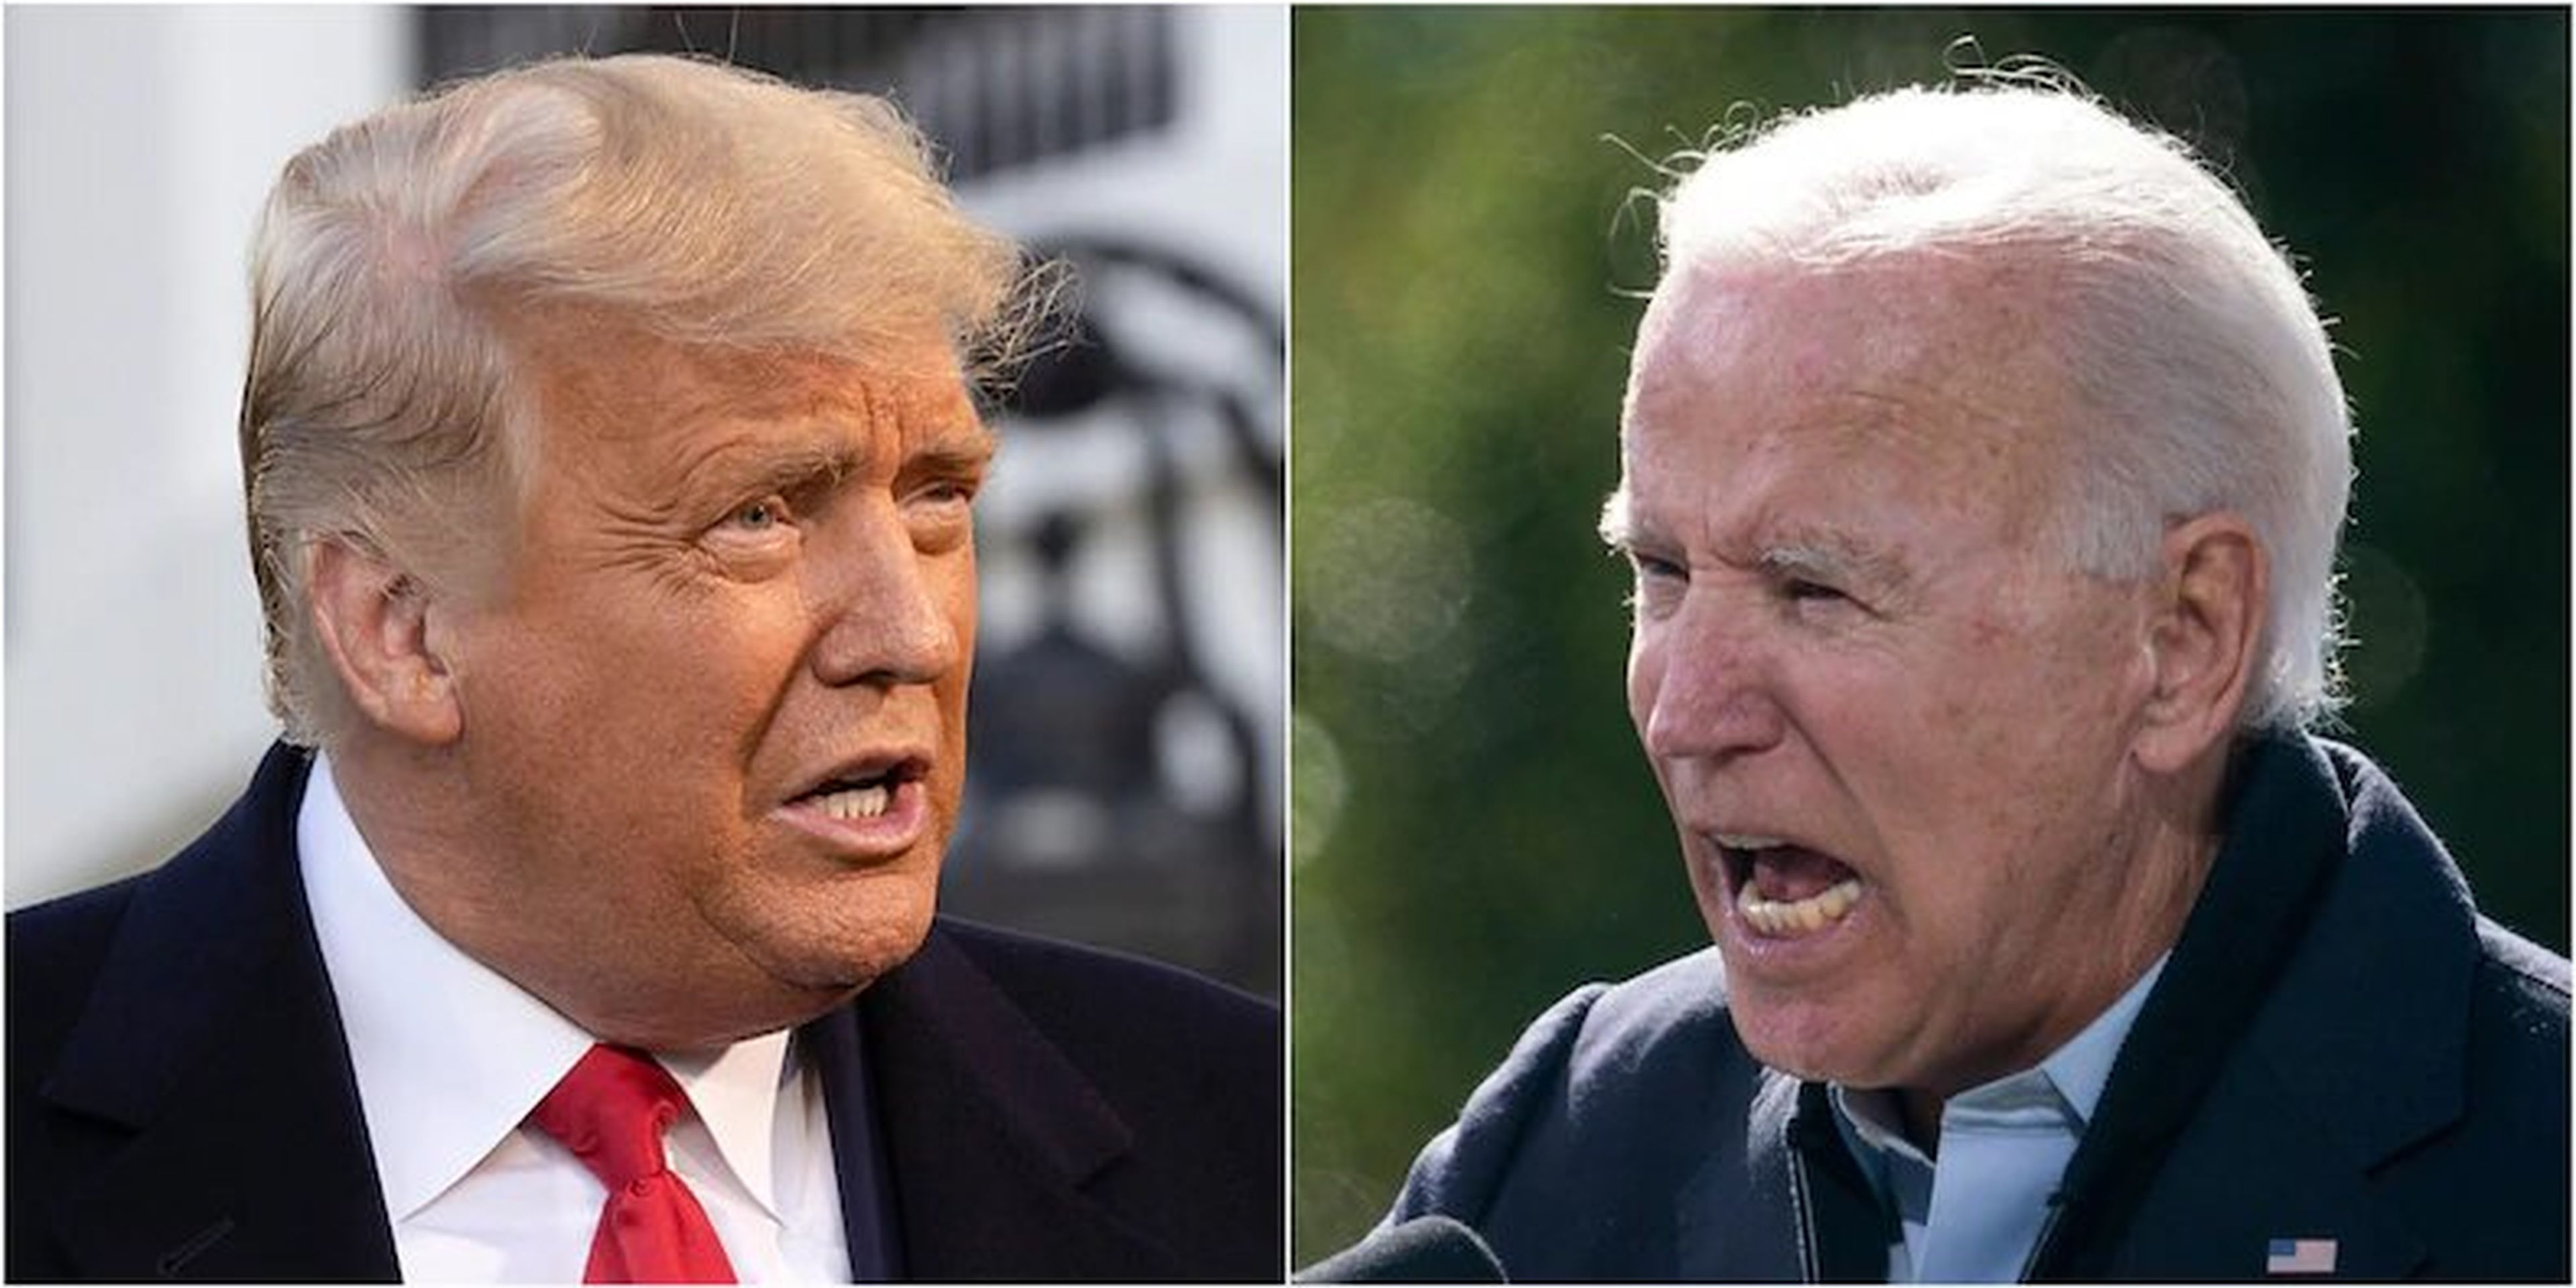 El presidente Donald Trump y el candidato demócrata Joe Biden